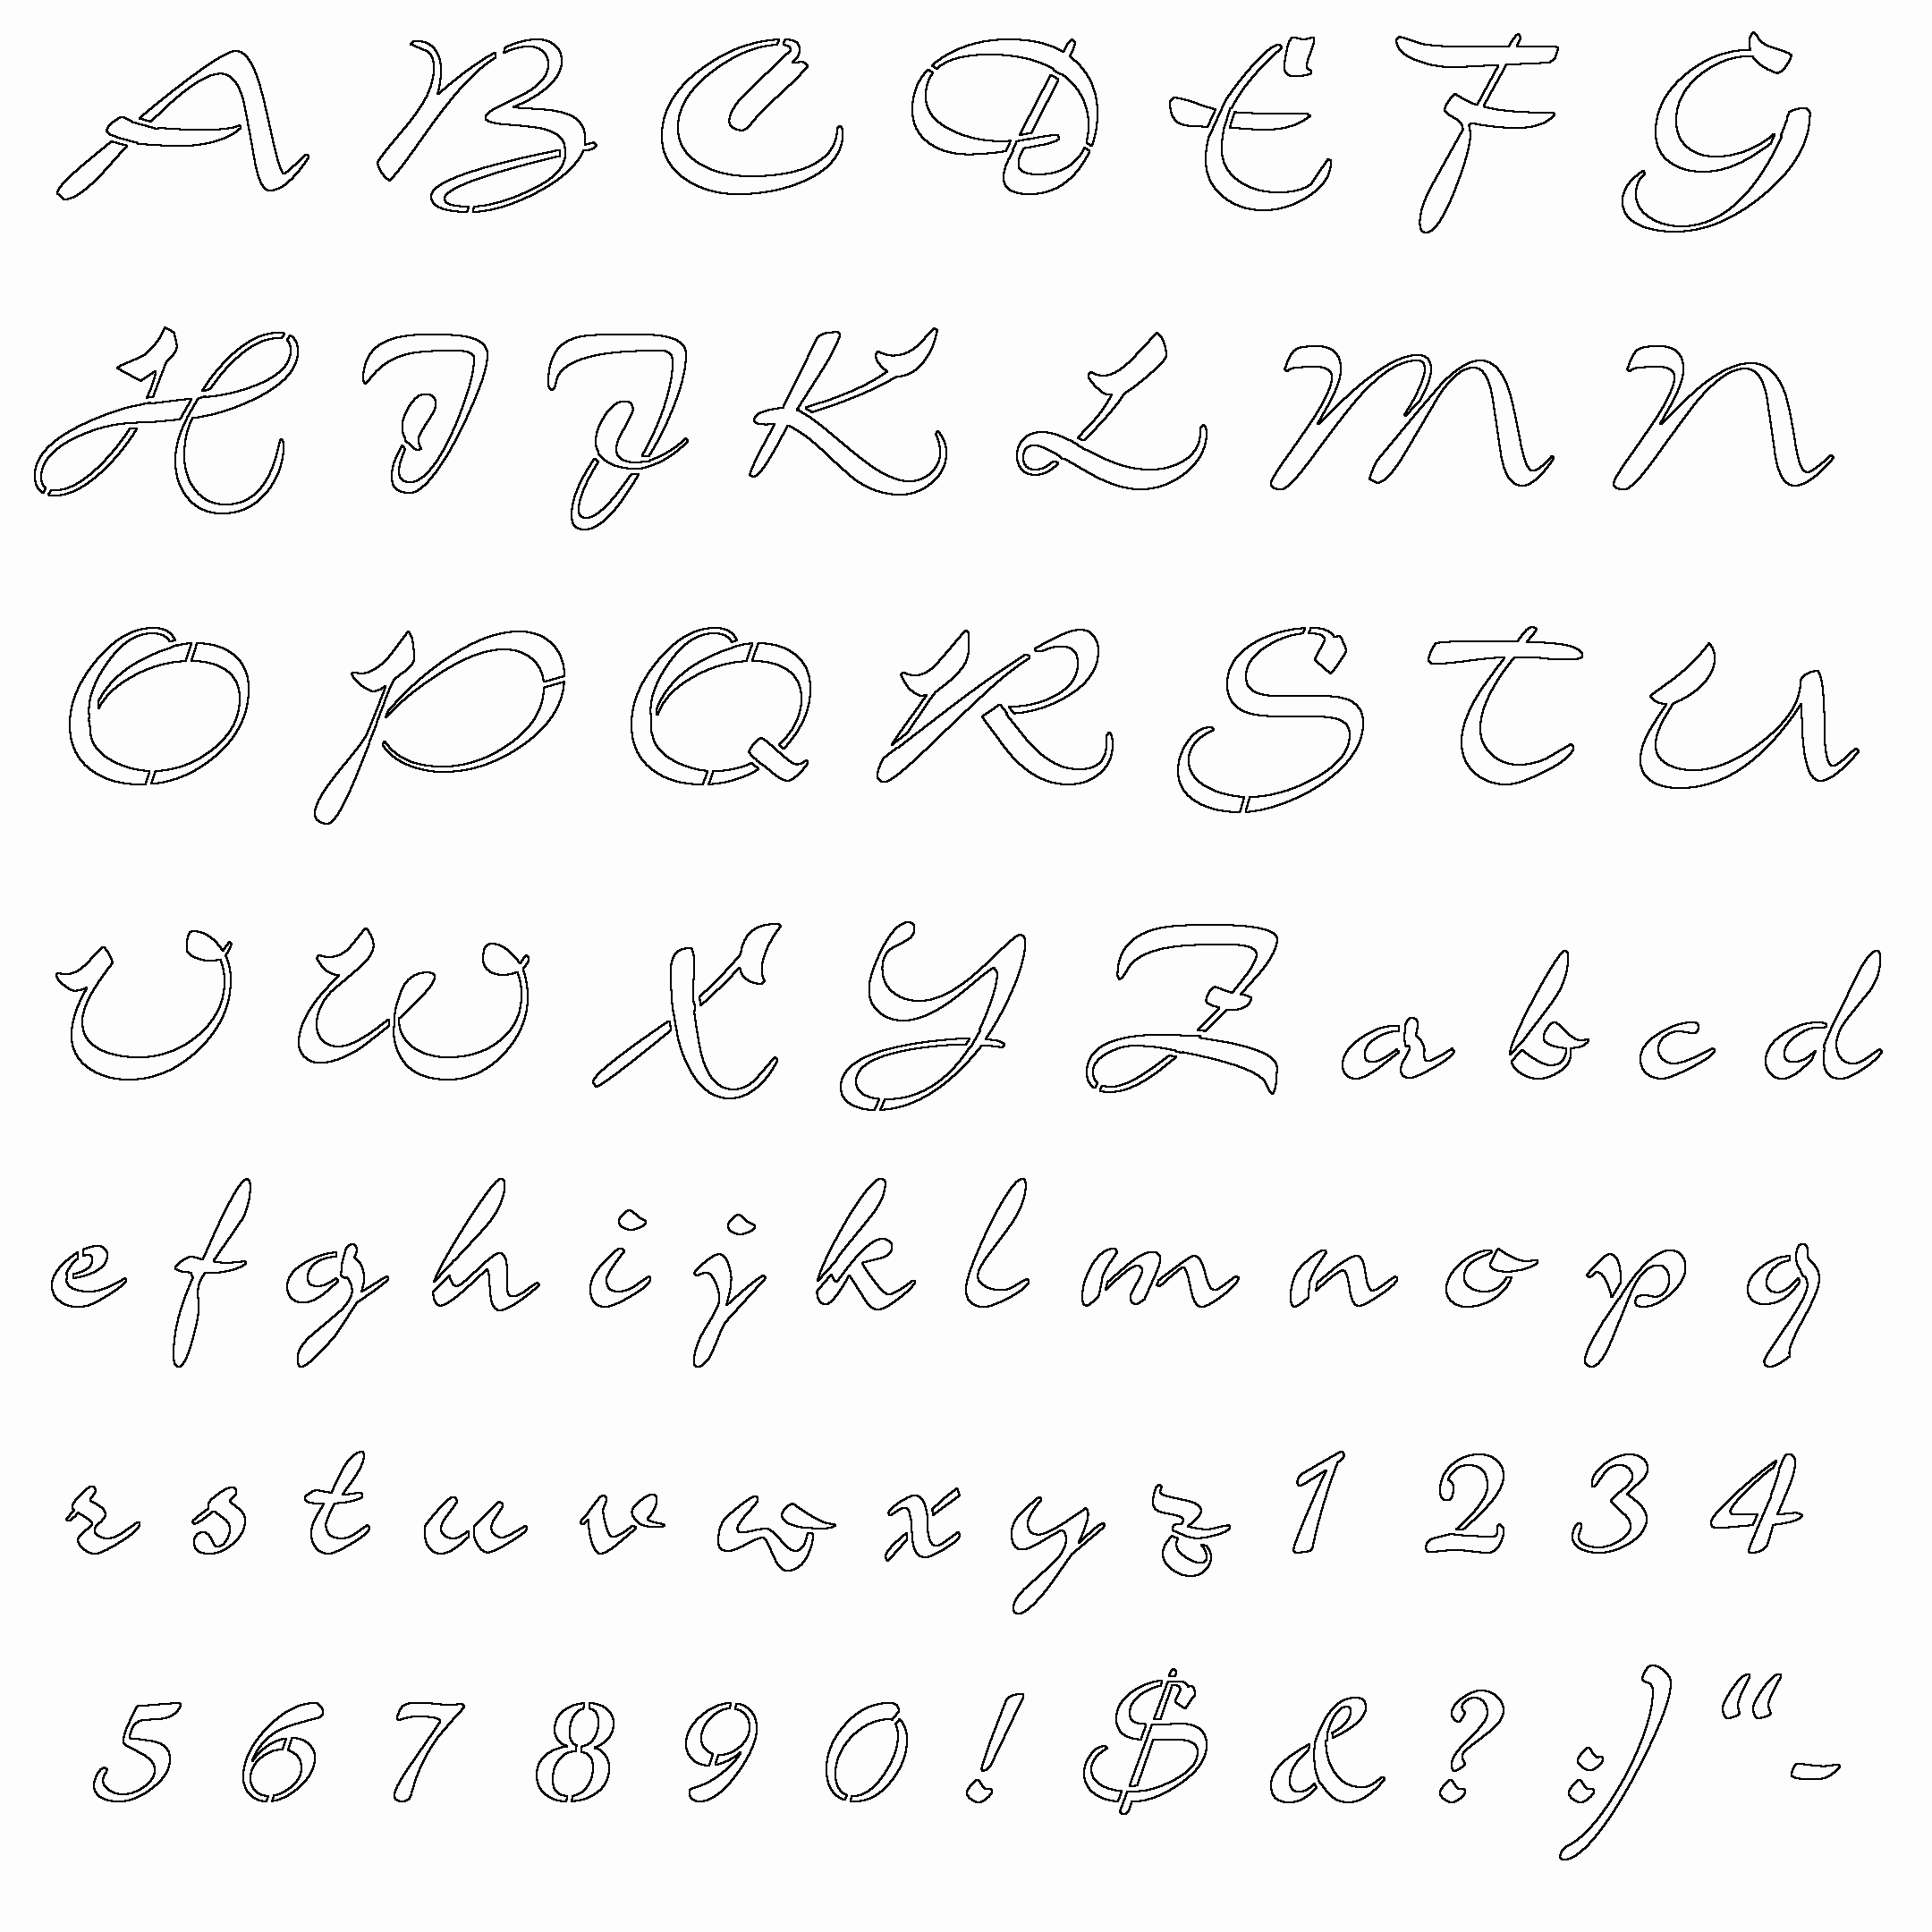 Cut Out Alphabet Letters Elegant Best Wallpaper 2012 Alphabet Letters Printable Stencils